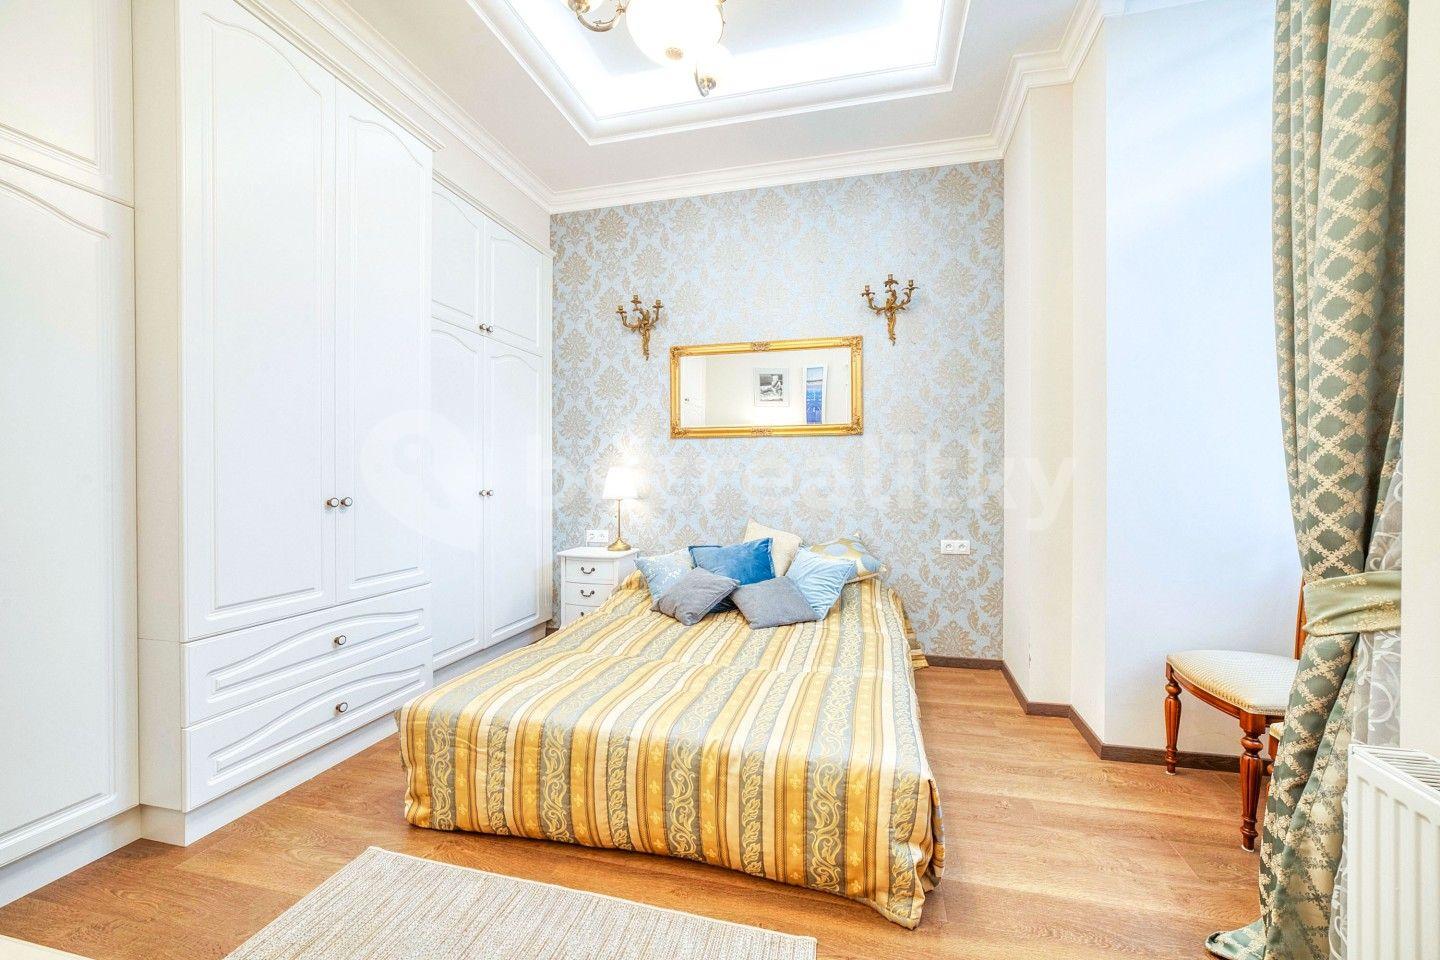 2 bedroom with open-plan kitchen flat for sale, 80 m², Hlavní třída, Mariánské Lázně, Karlovarský Region